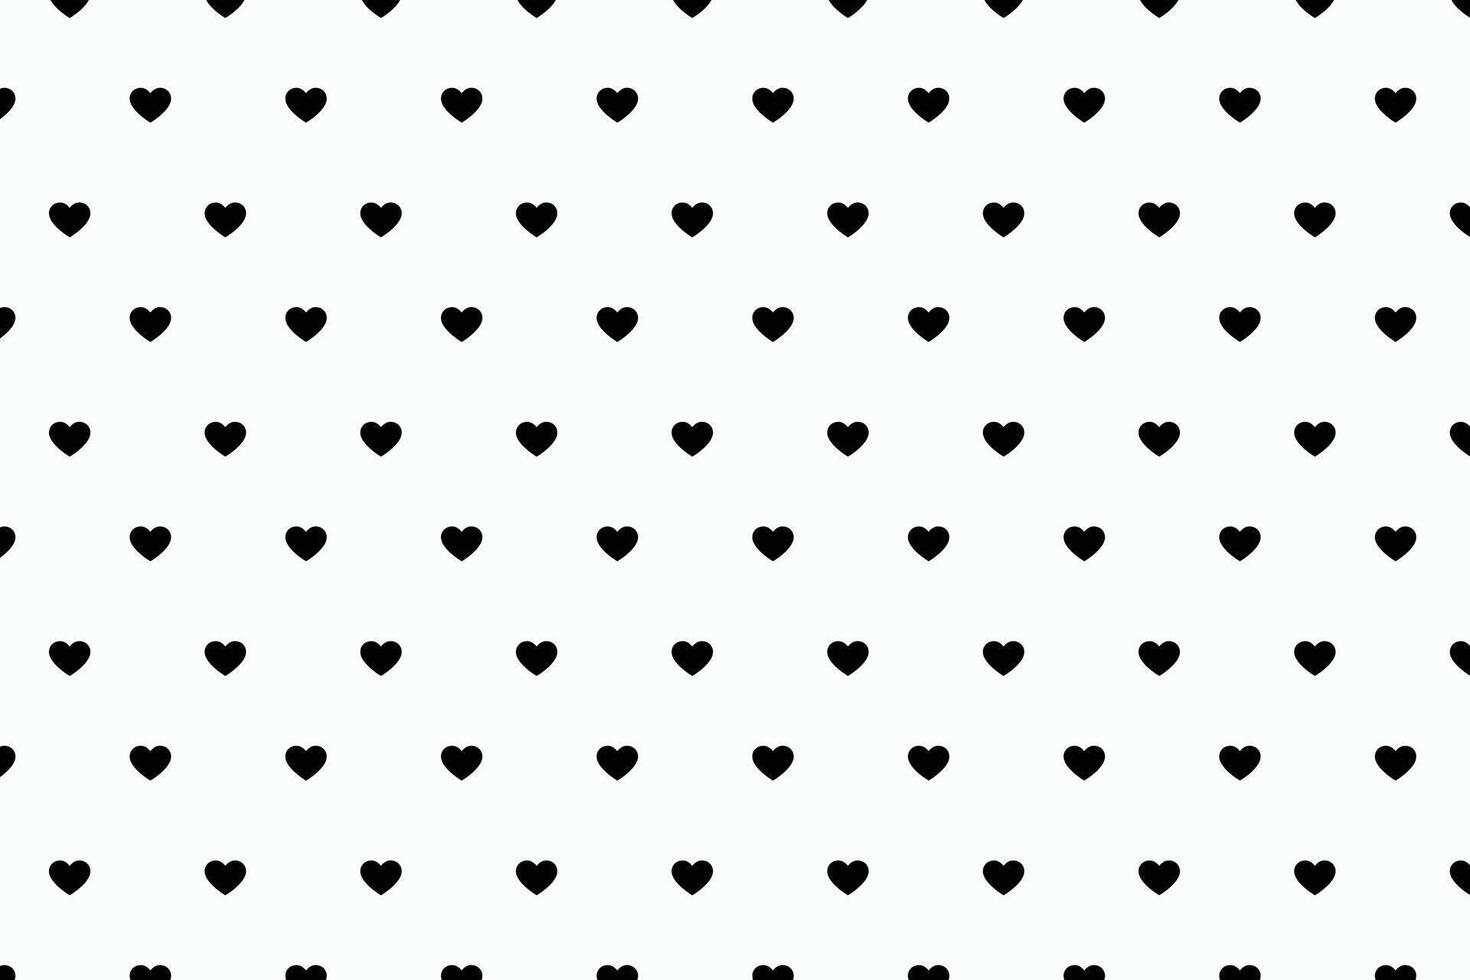 einfach und süß romantisch Herz Muster zum Valentinsgrüße Karten vektor